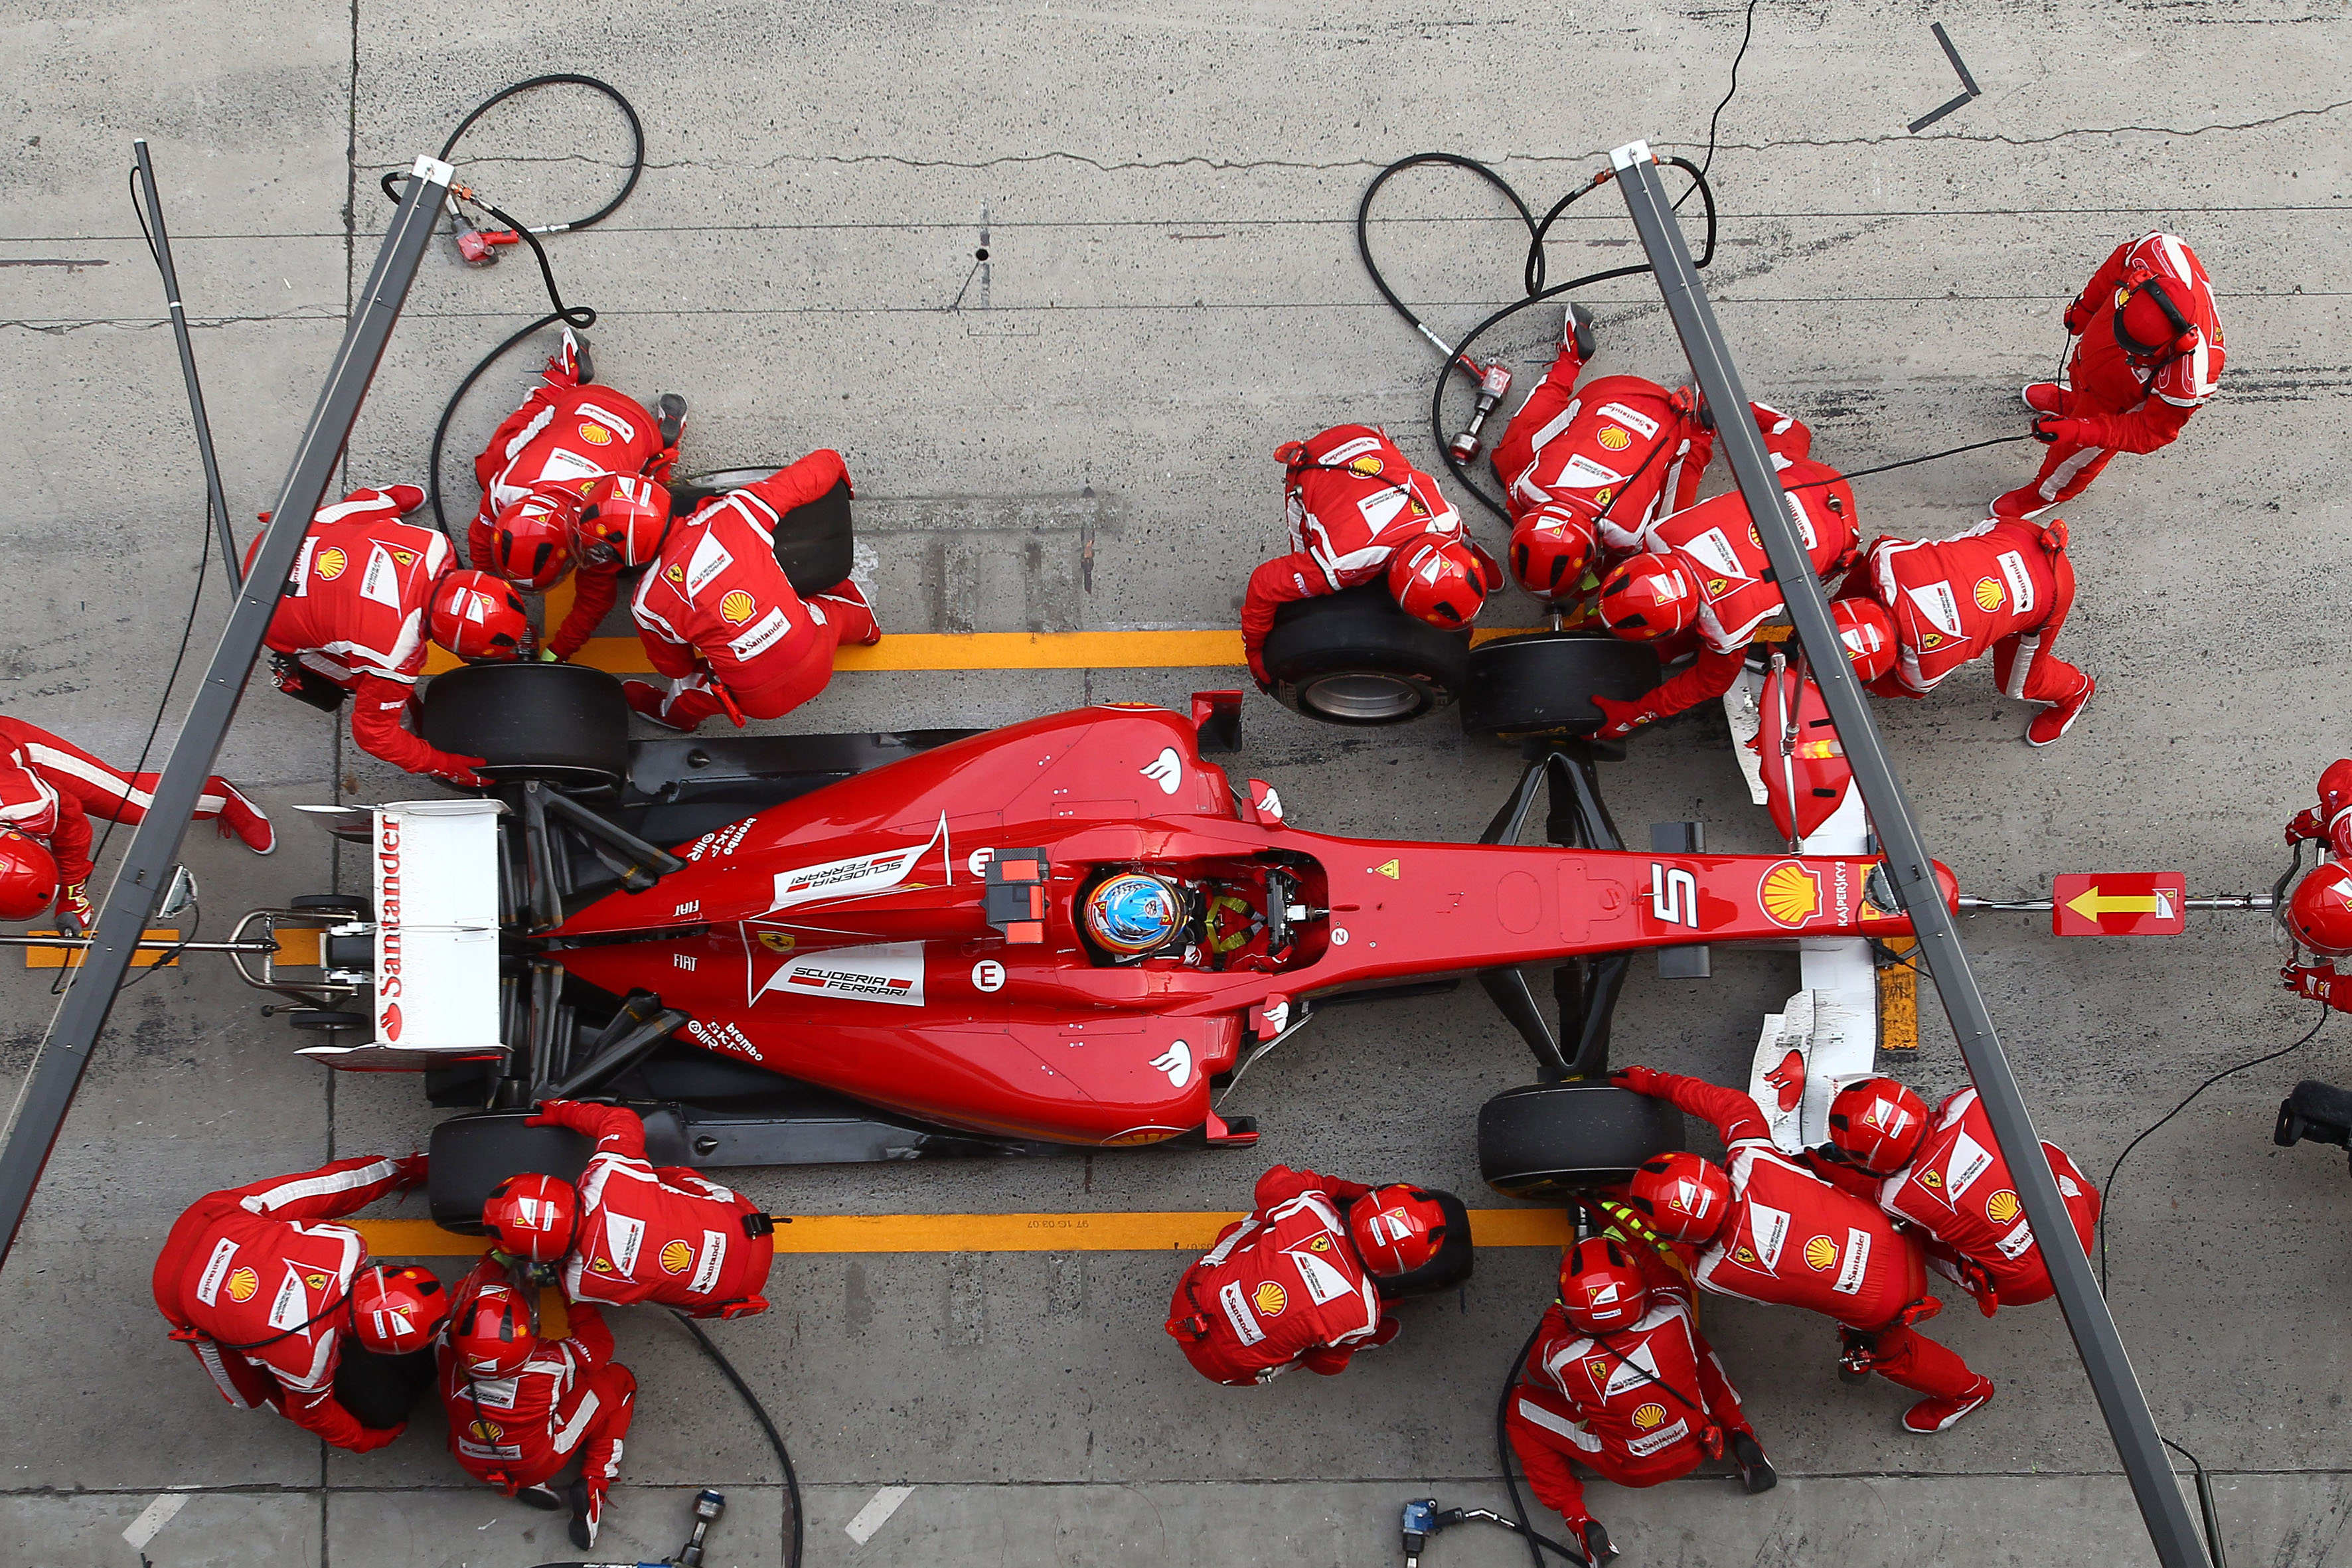 Ontwerper Ferrari geeft tekortkomingen toe